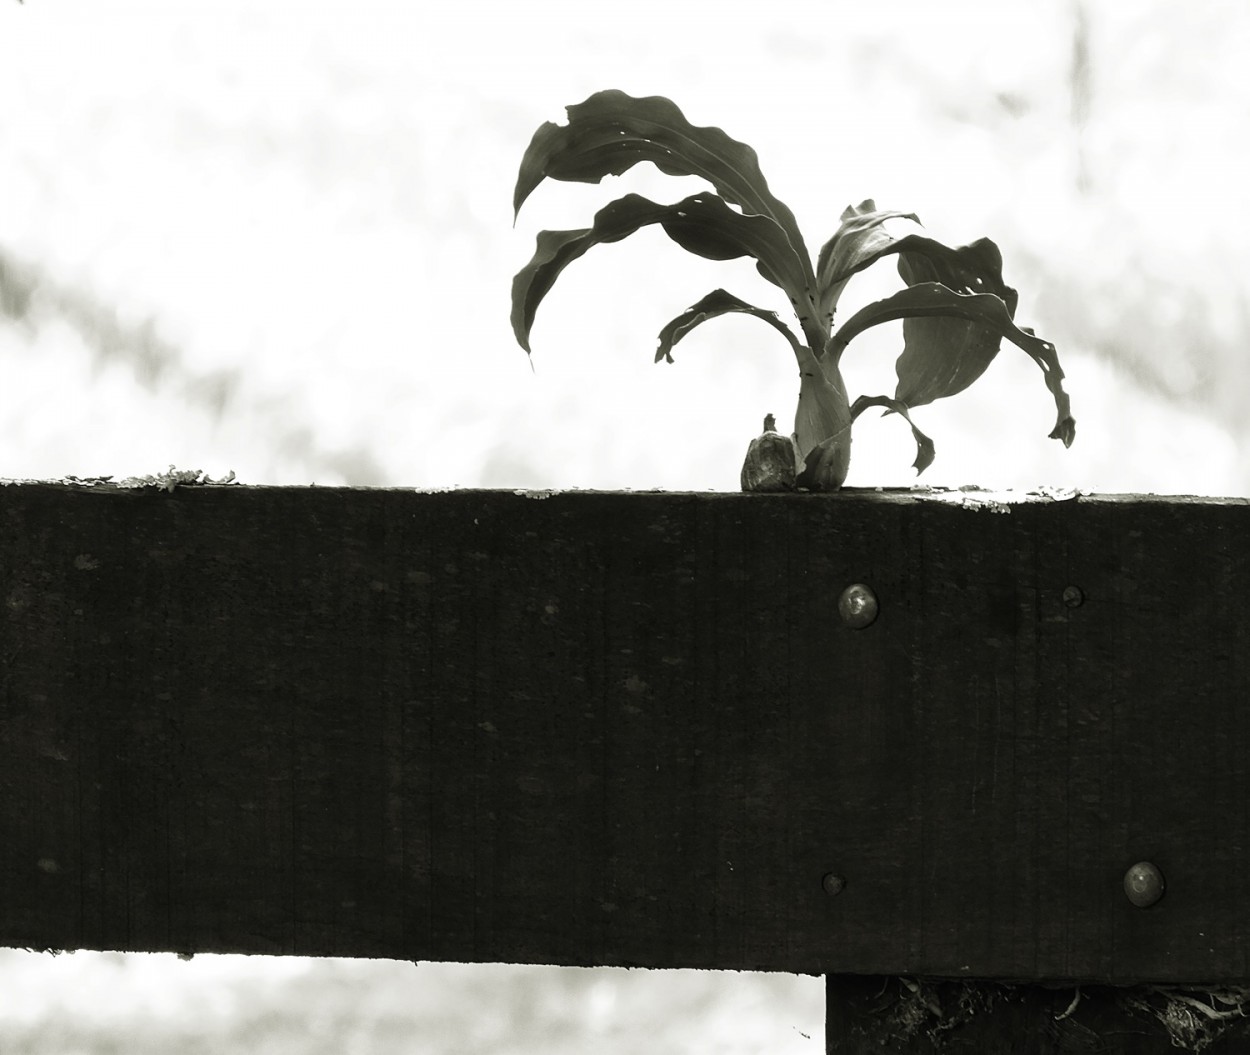 "Quem plantou em cima da cerca ? Foi o passarinho!" de Decio Badari